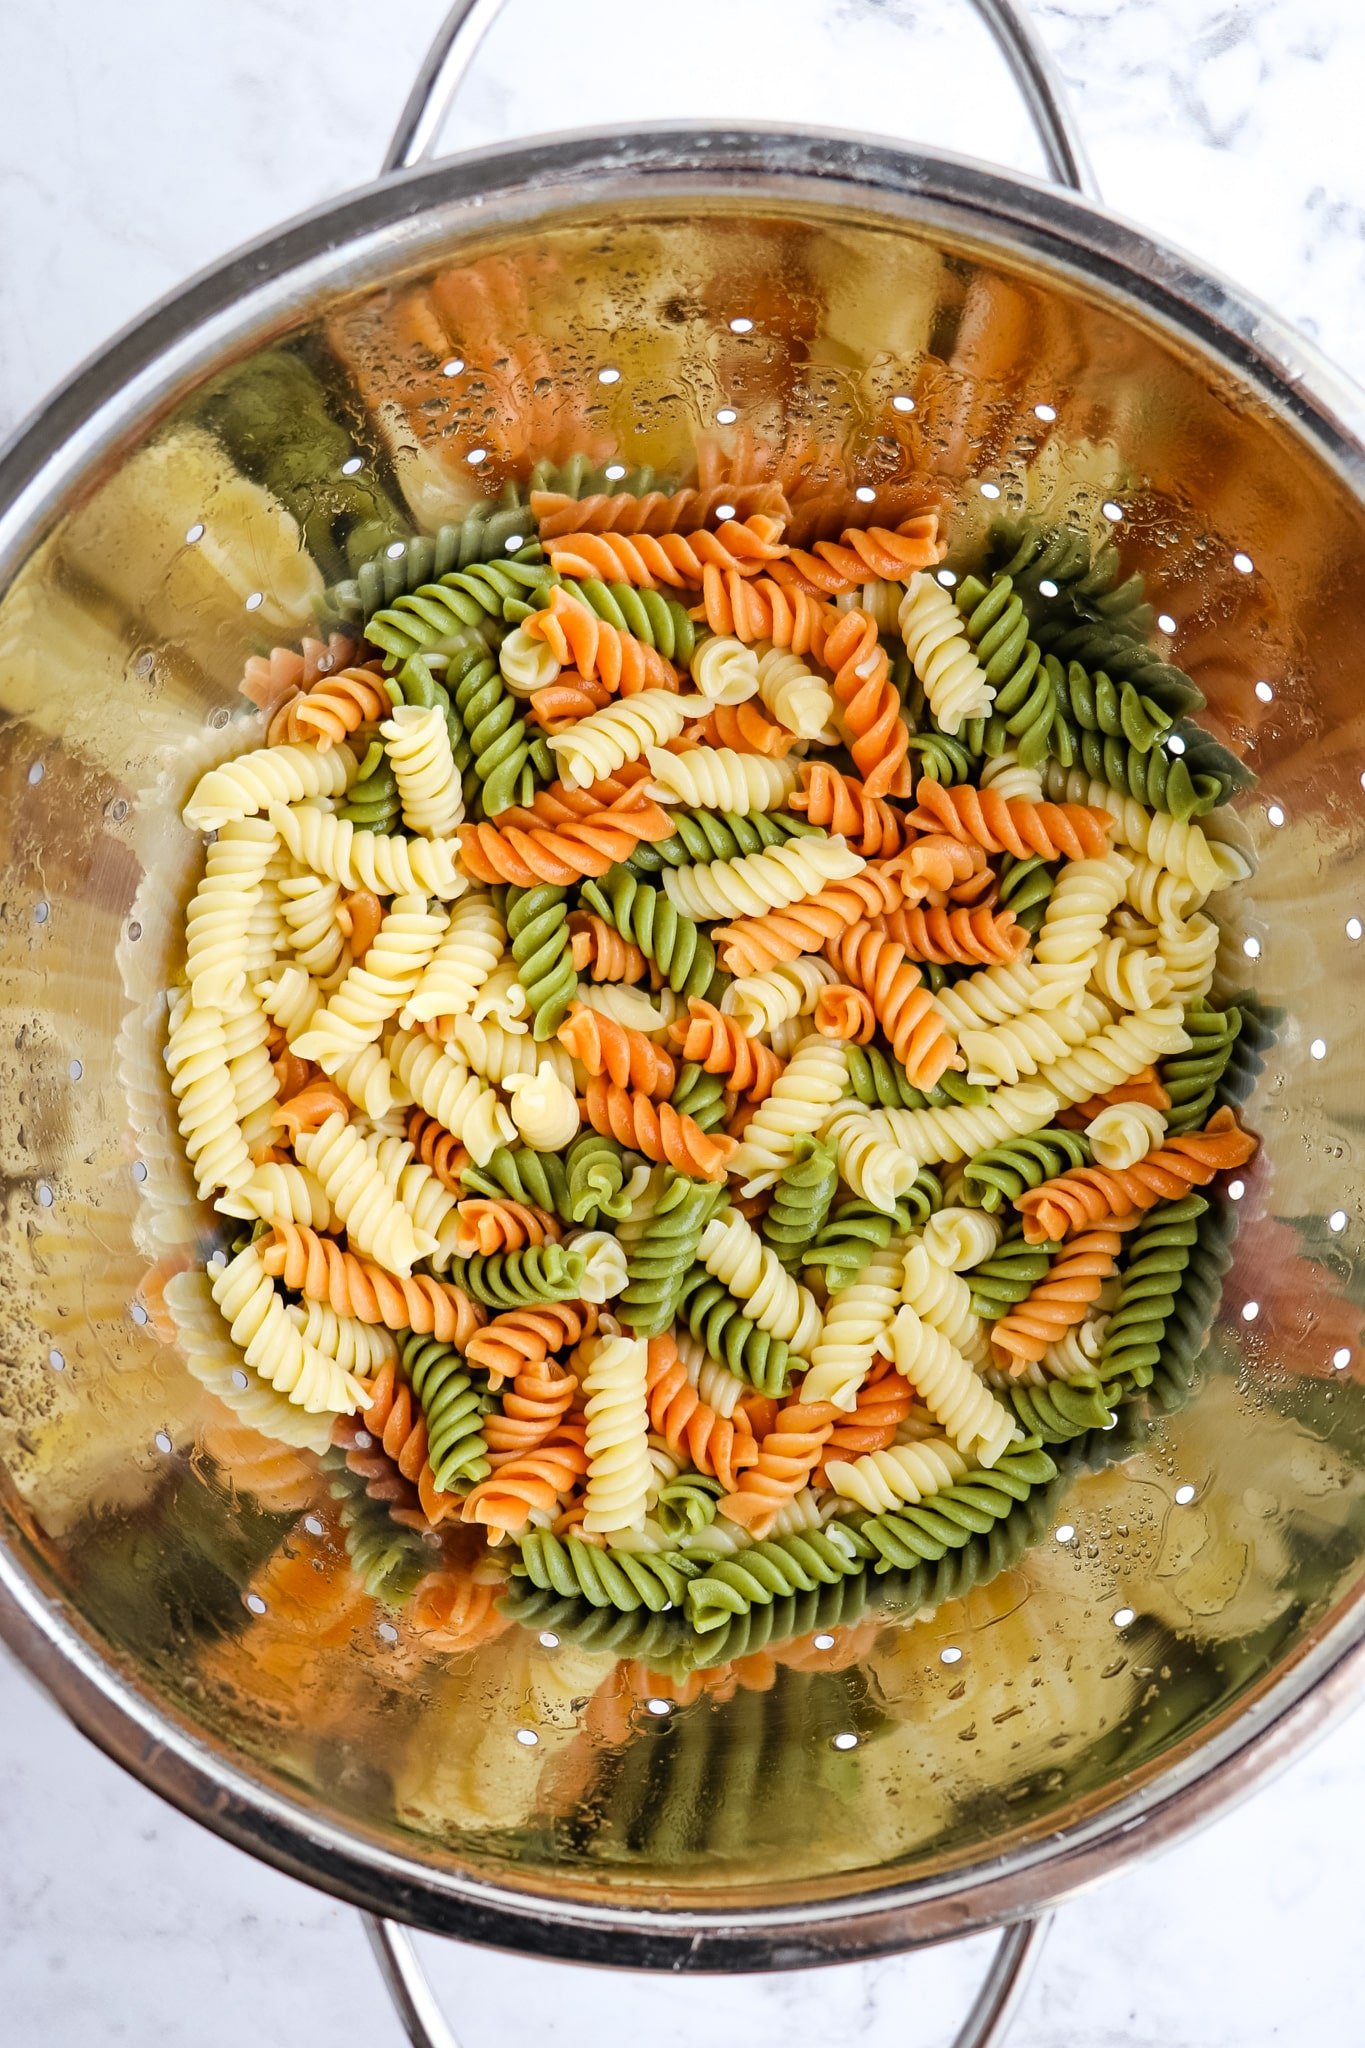 Tri-color rotini pasta drained in collander.